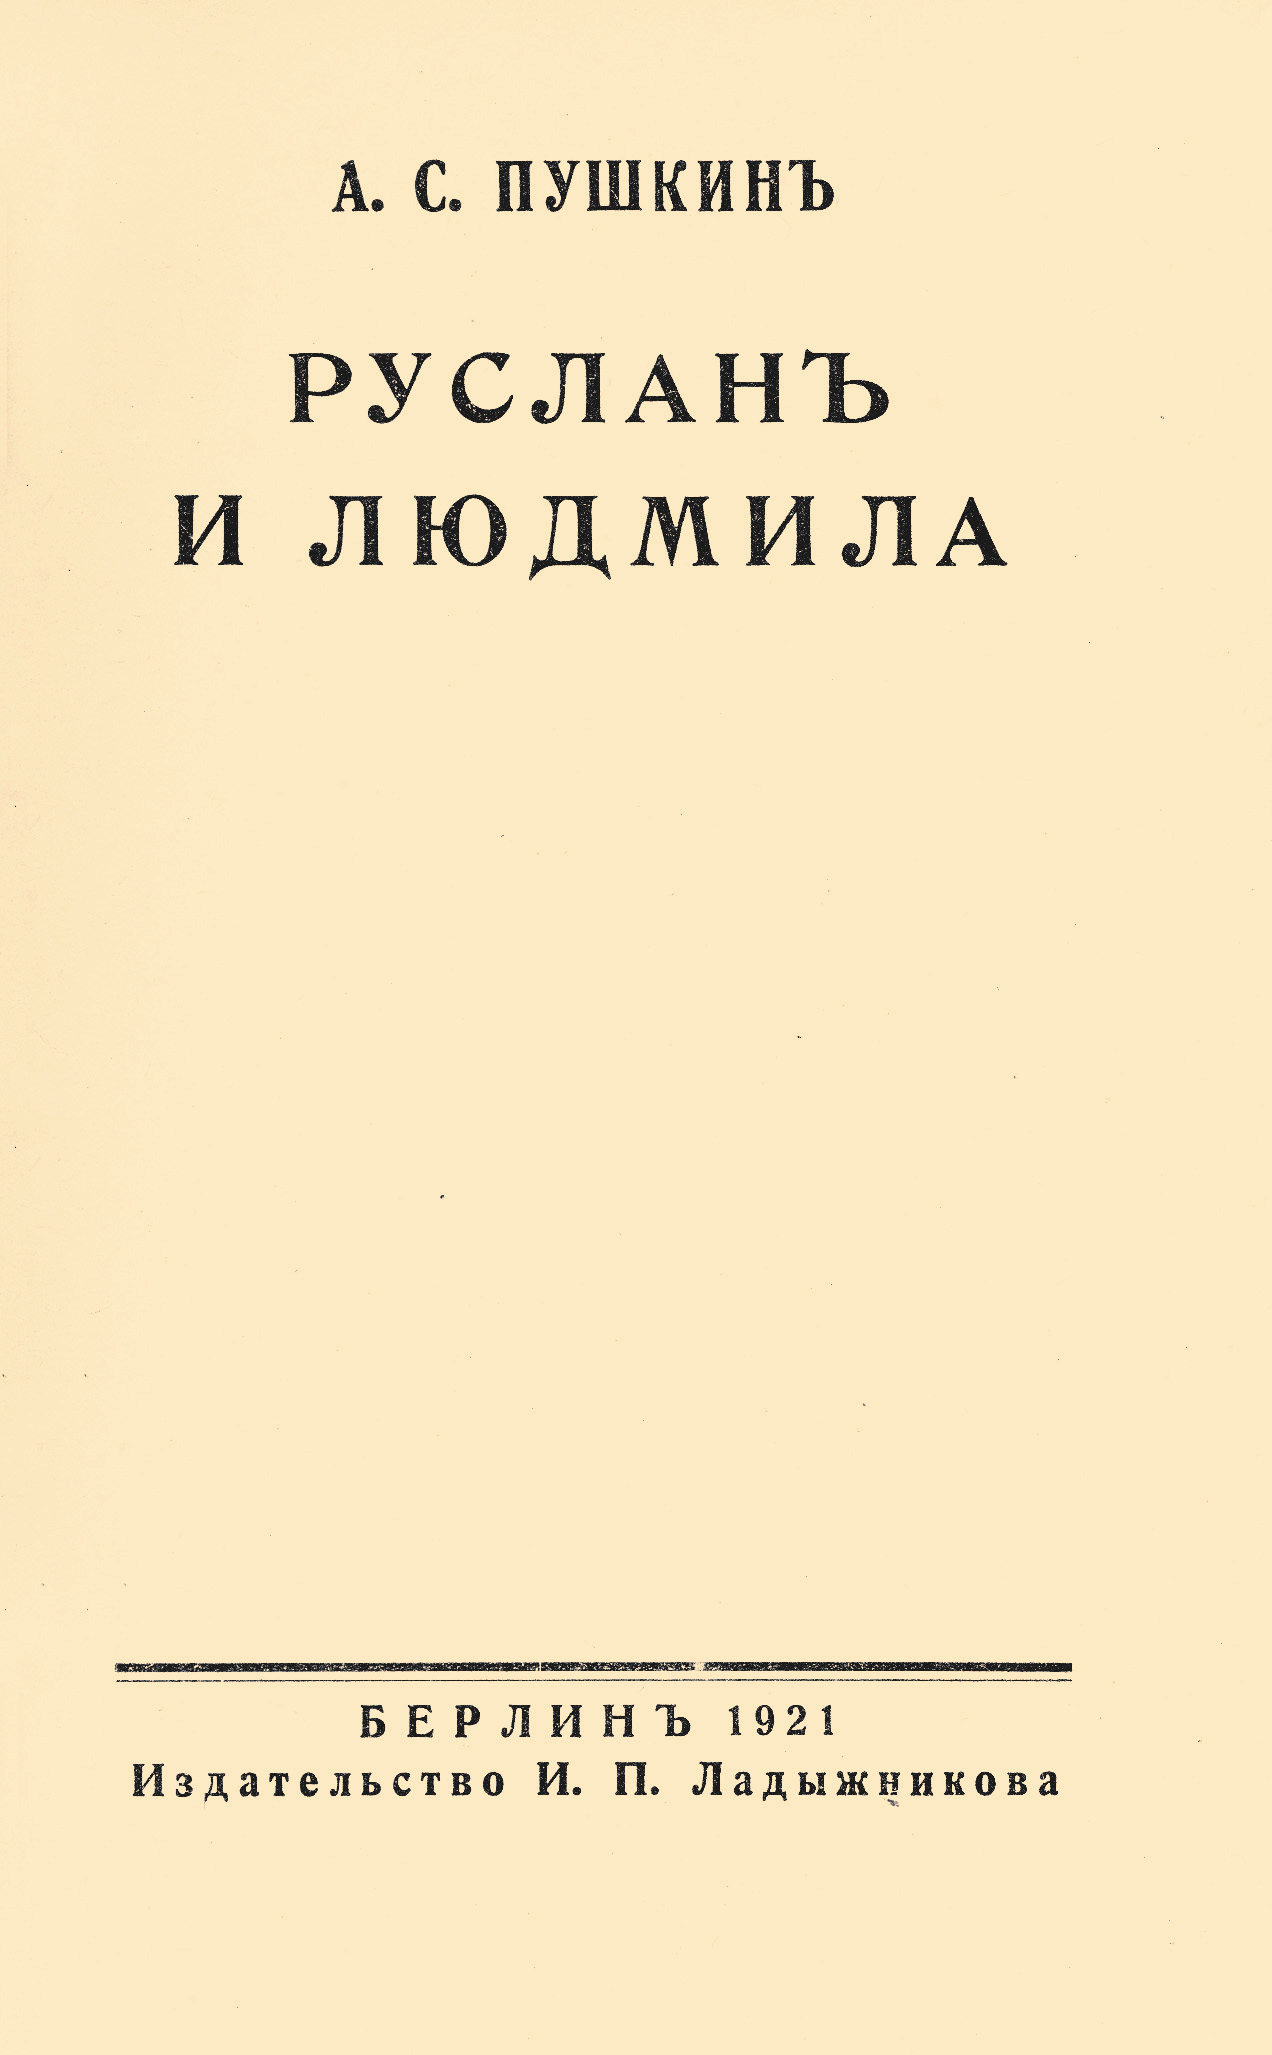 Пушкин А.С. Руслан и Людмила. – Берлин : Изд-во И.П. Ладыжникова, 1921. – 90 с.